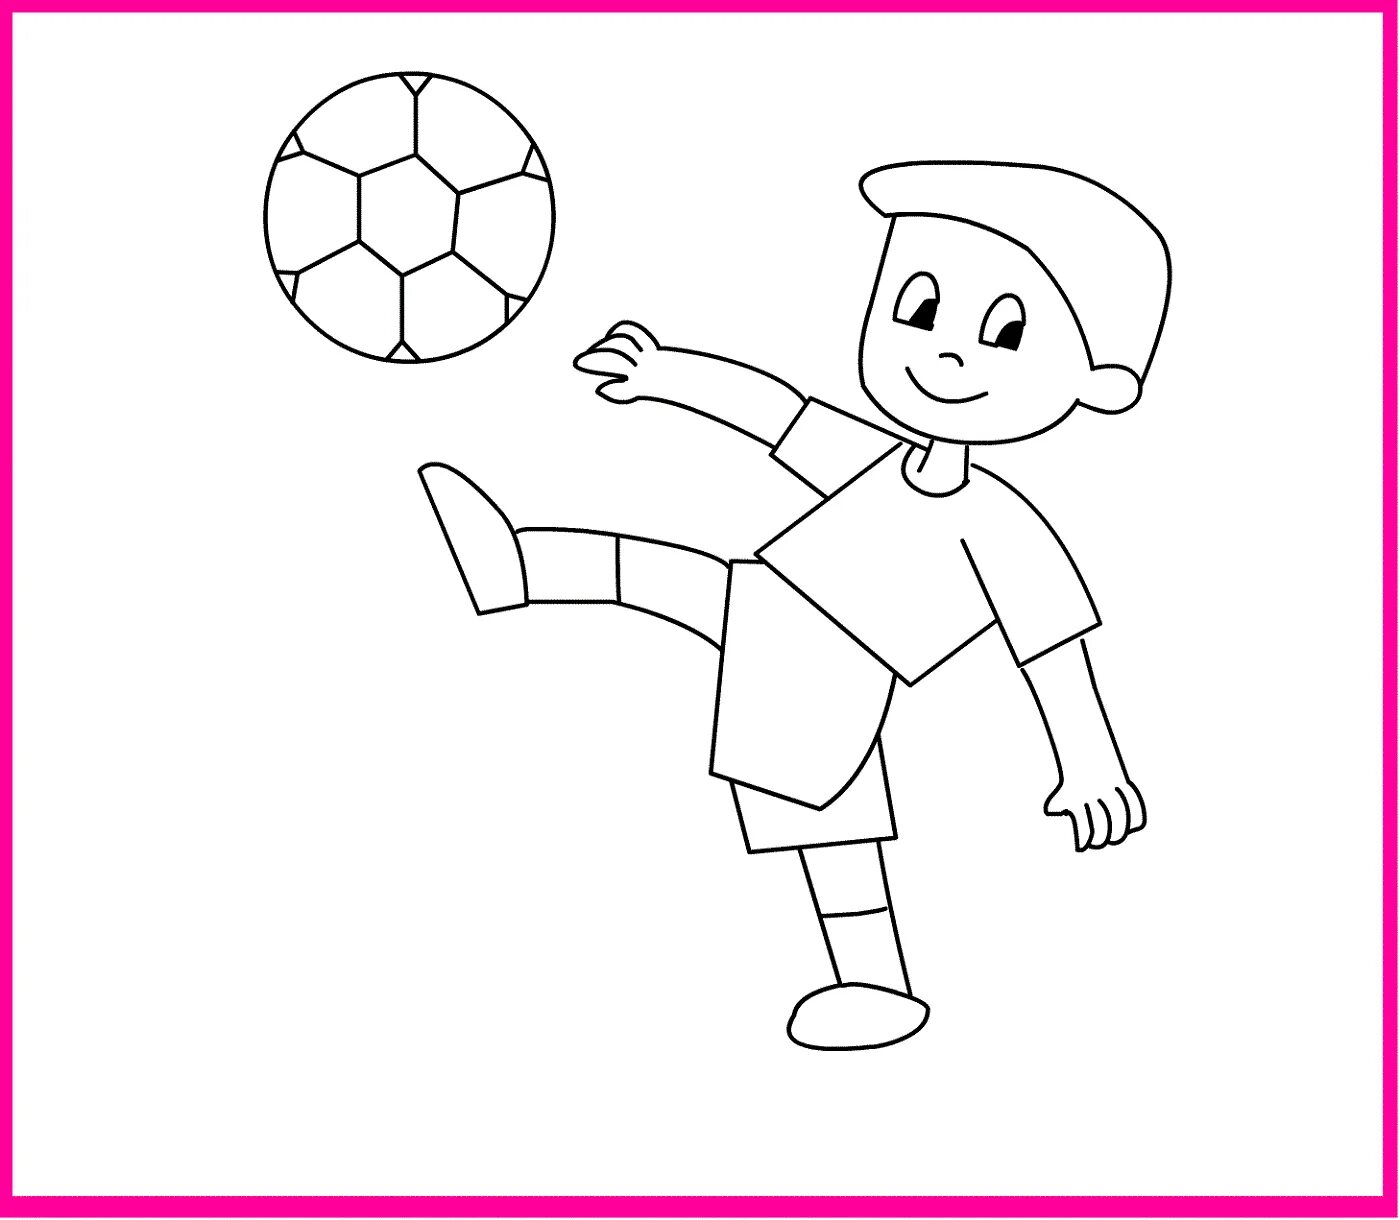 Рисунок на тему футбол. Рисунки на футбольную тему для детей. Футбол рисунок для детей. Футбол рисунок для детей лёгкий. Нарисовать любые игры